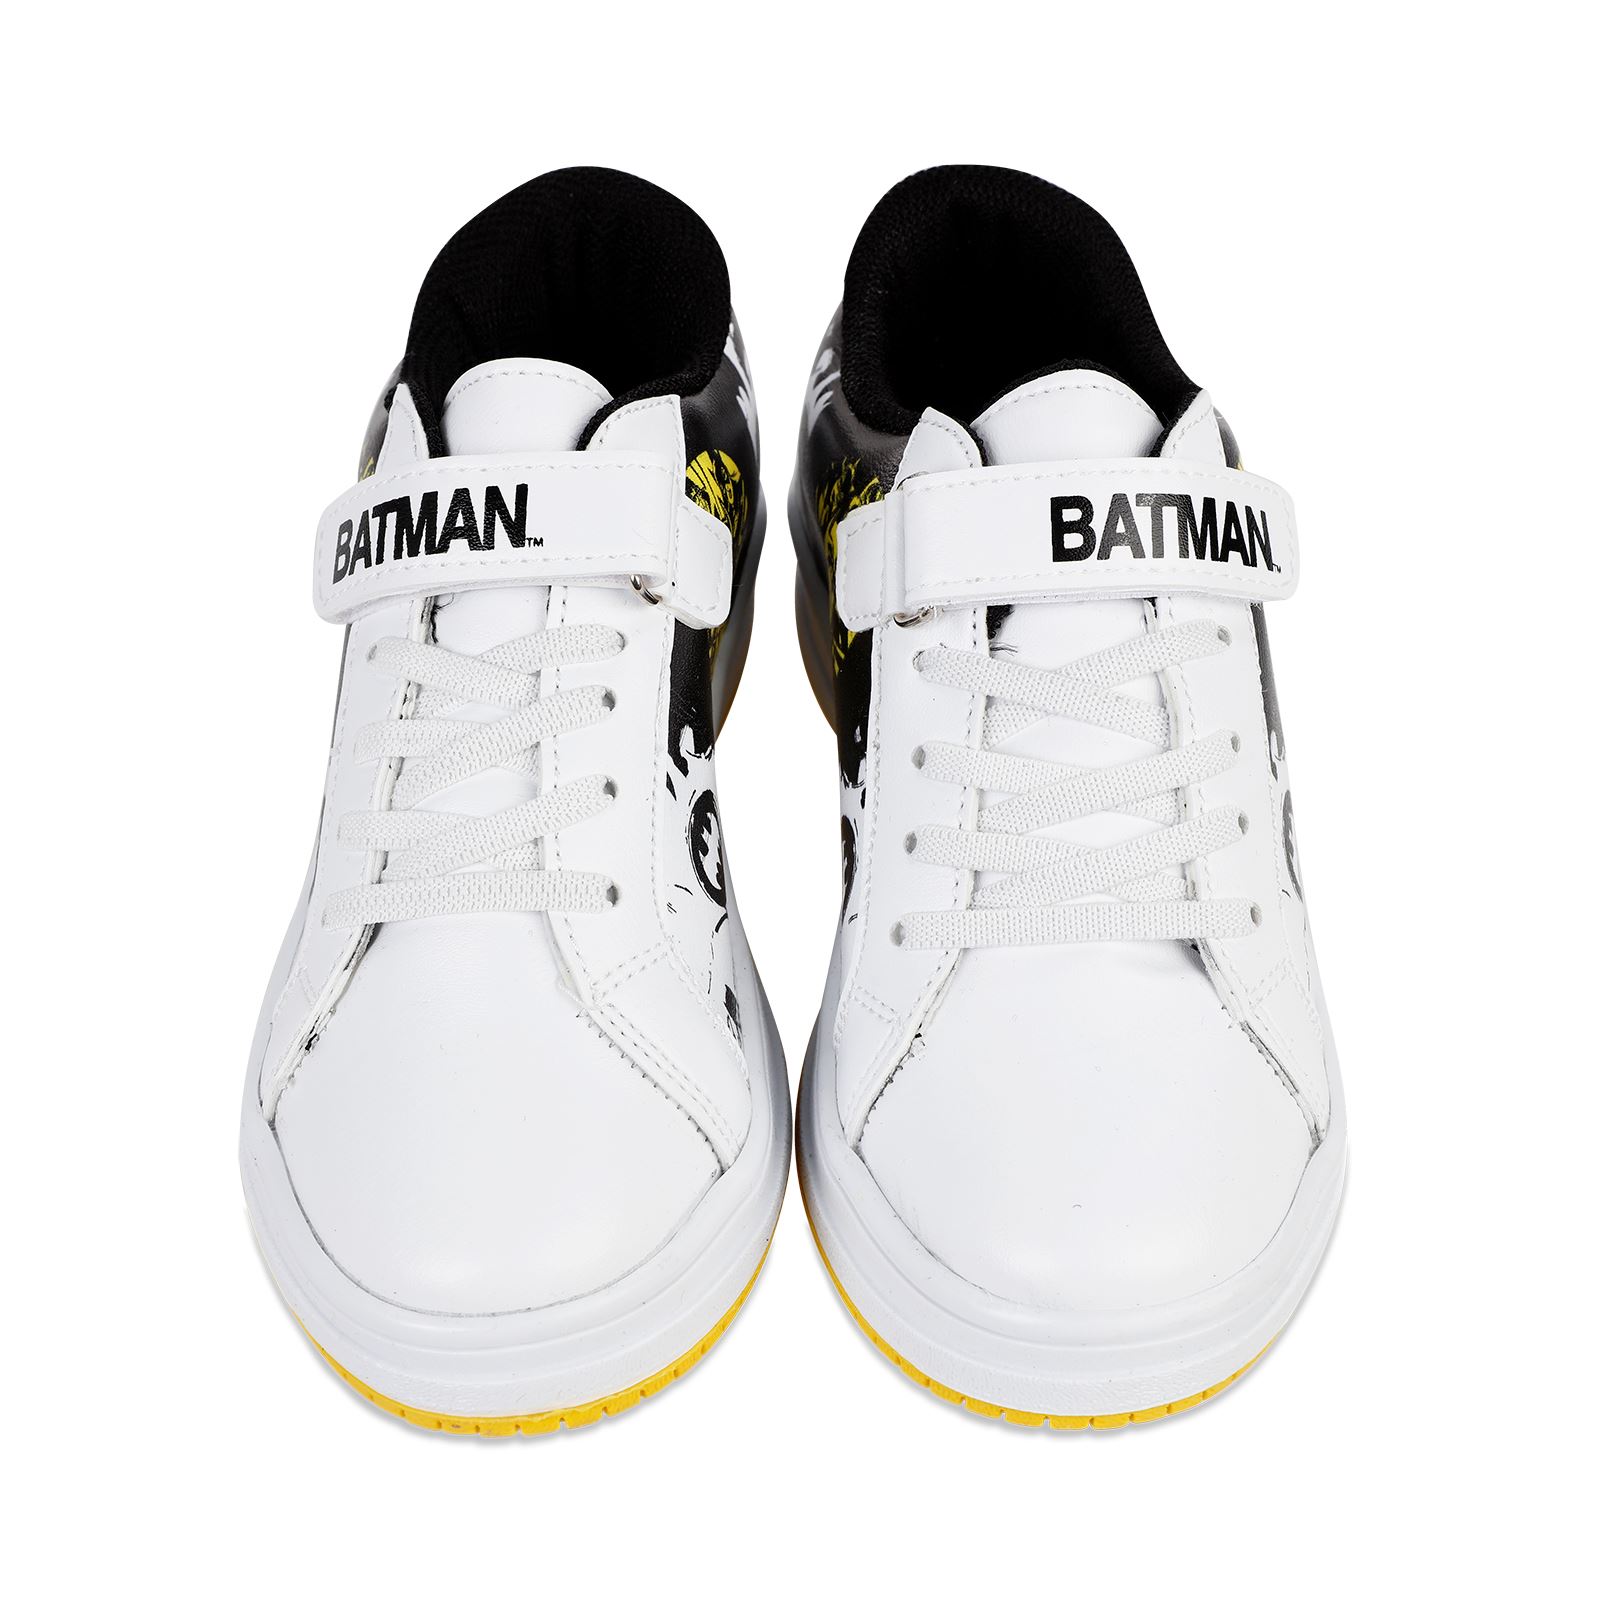 Batman Erkek Çocuk Spor Ayakkabı 30-35 Numara Beyaz